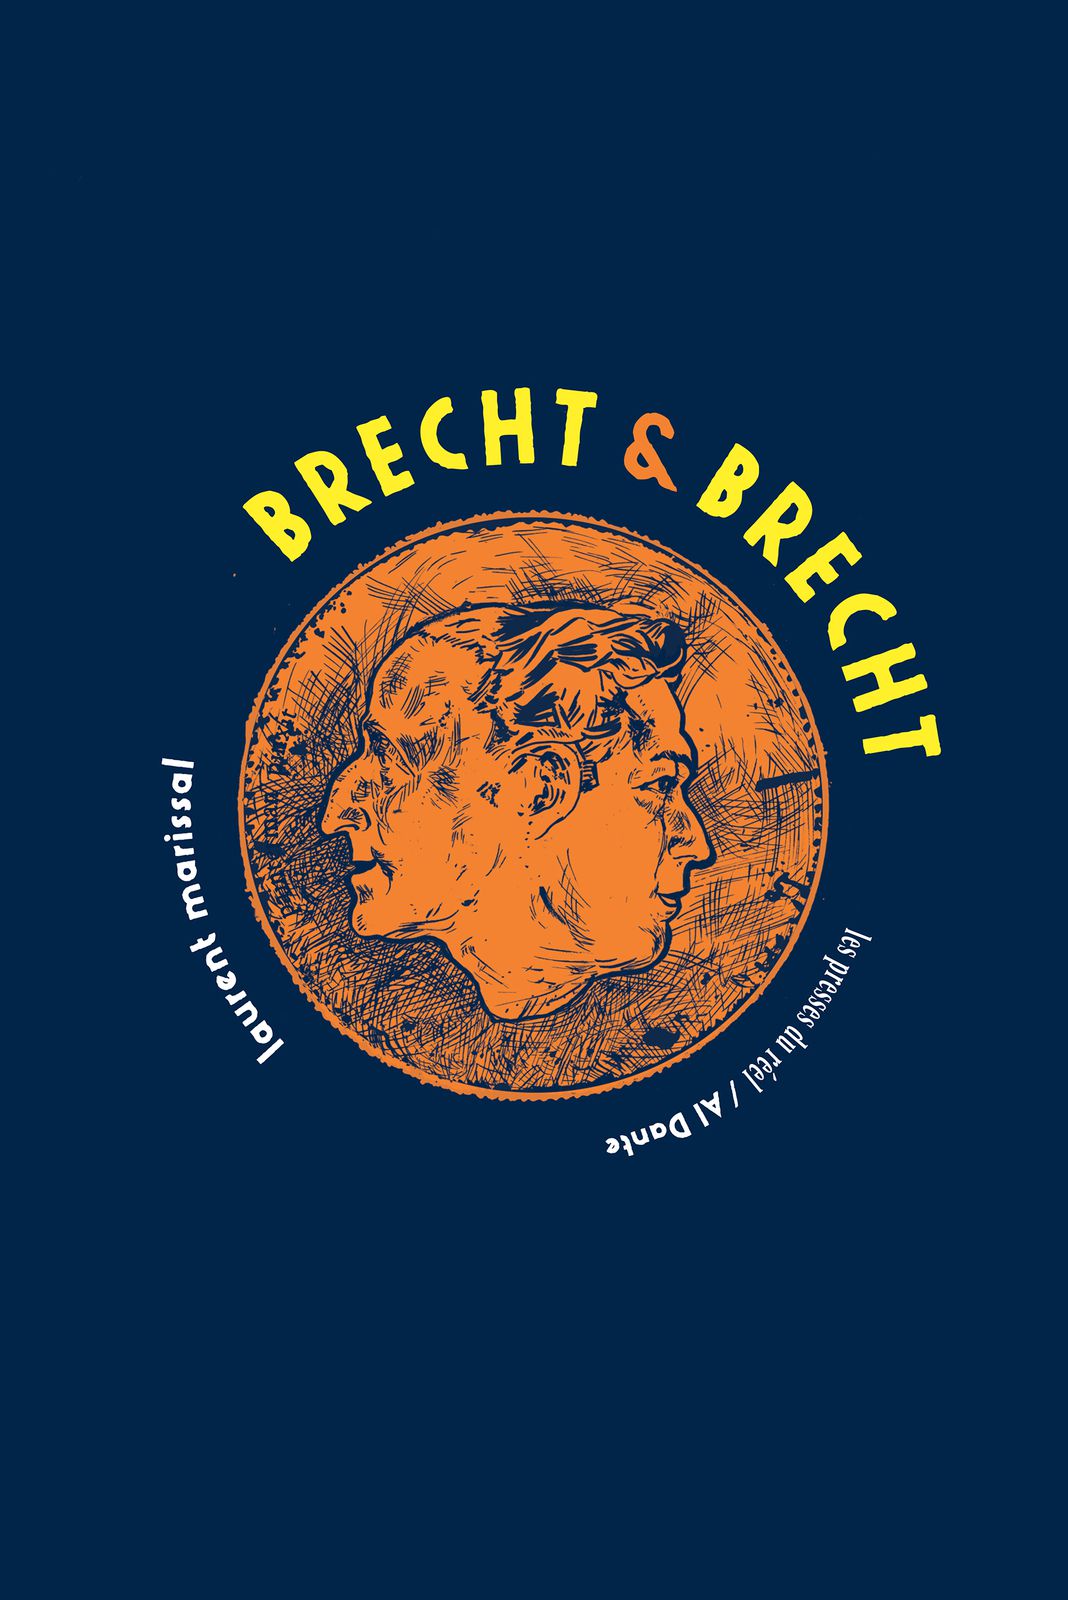 Brecht &amp; Brecht